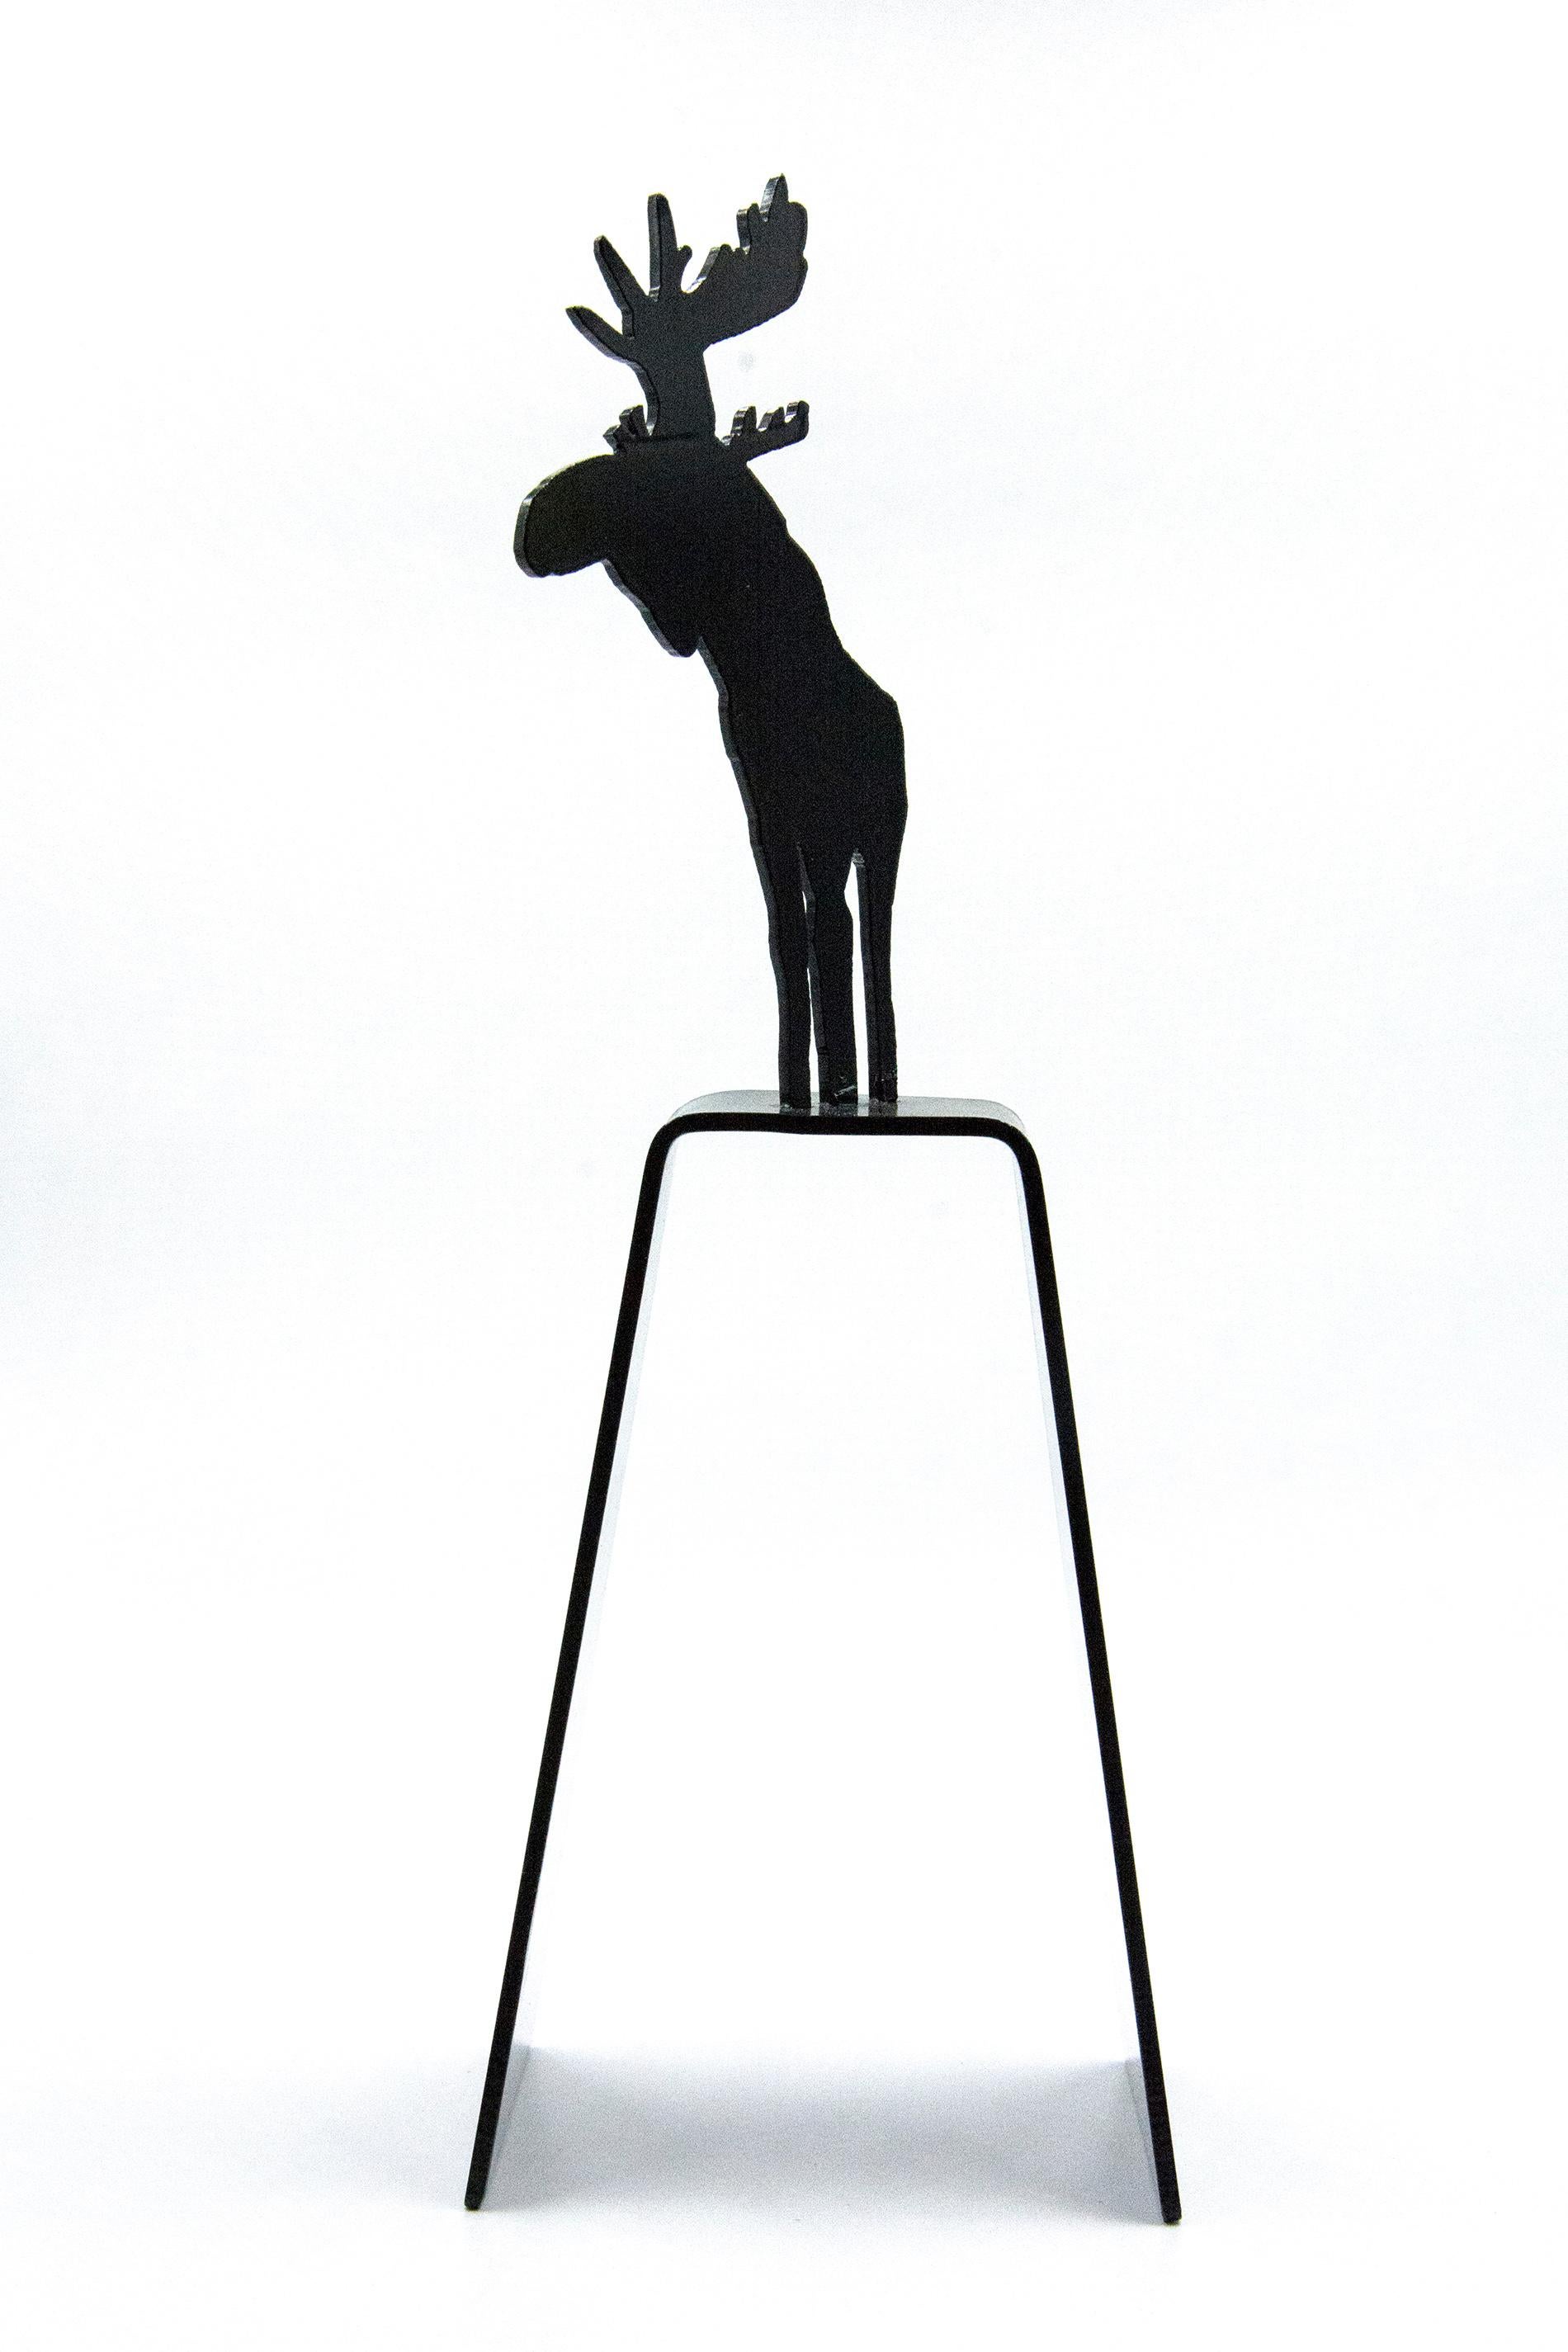 Mooseconstrue 1/4 - small, playful, pop art, Canadian, aluminum sculpture - Sculpture by Charles Pachter